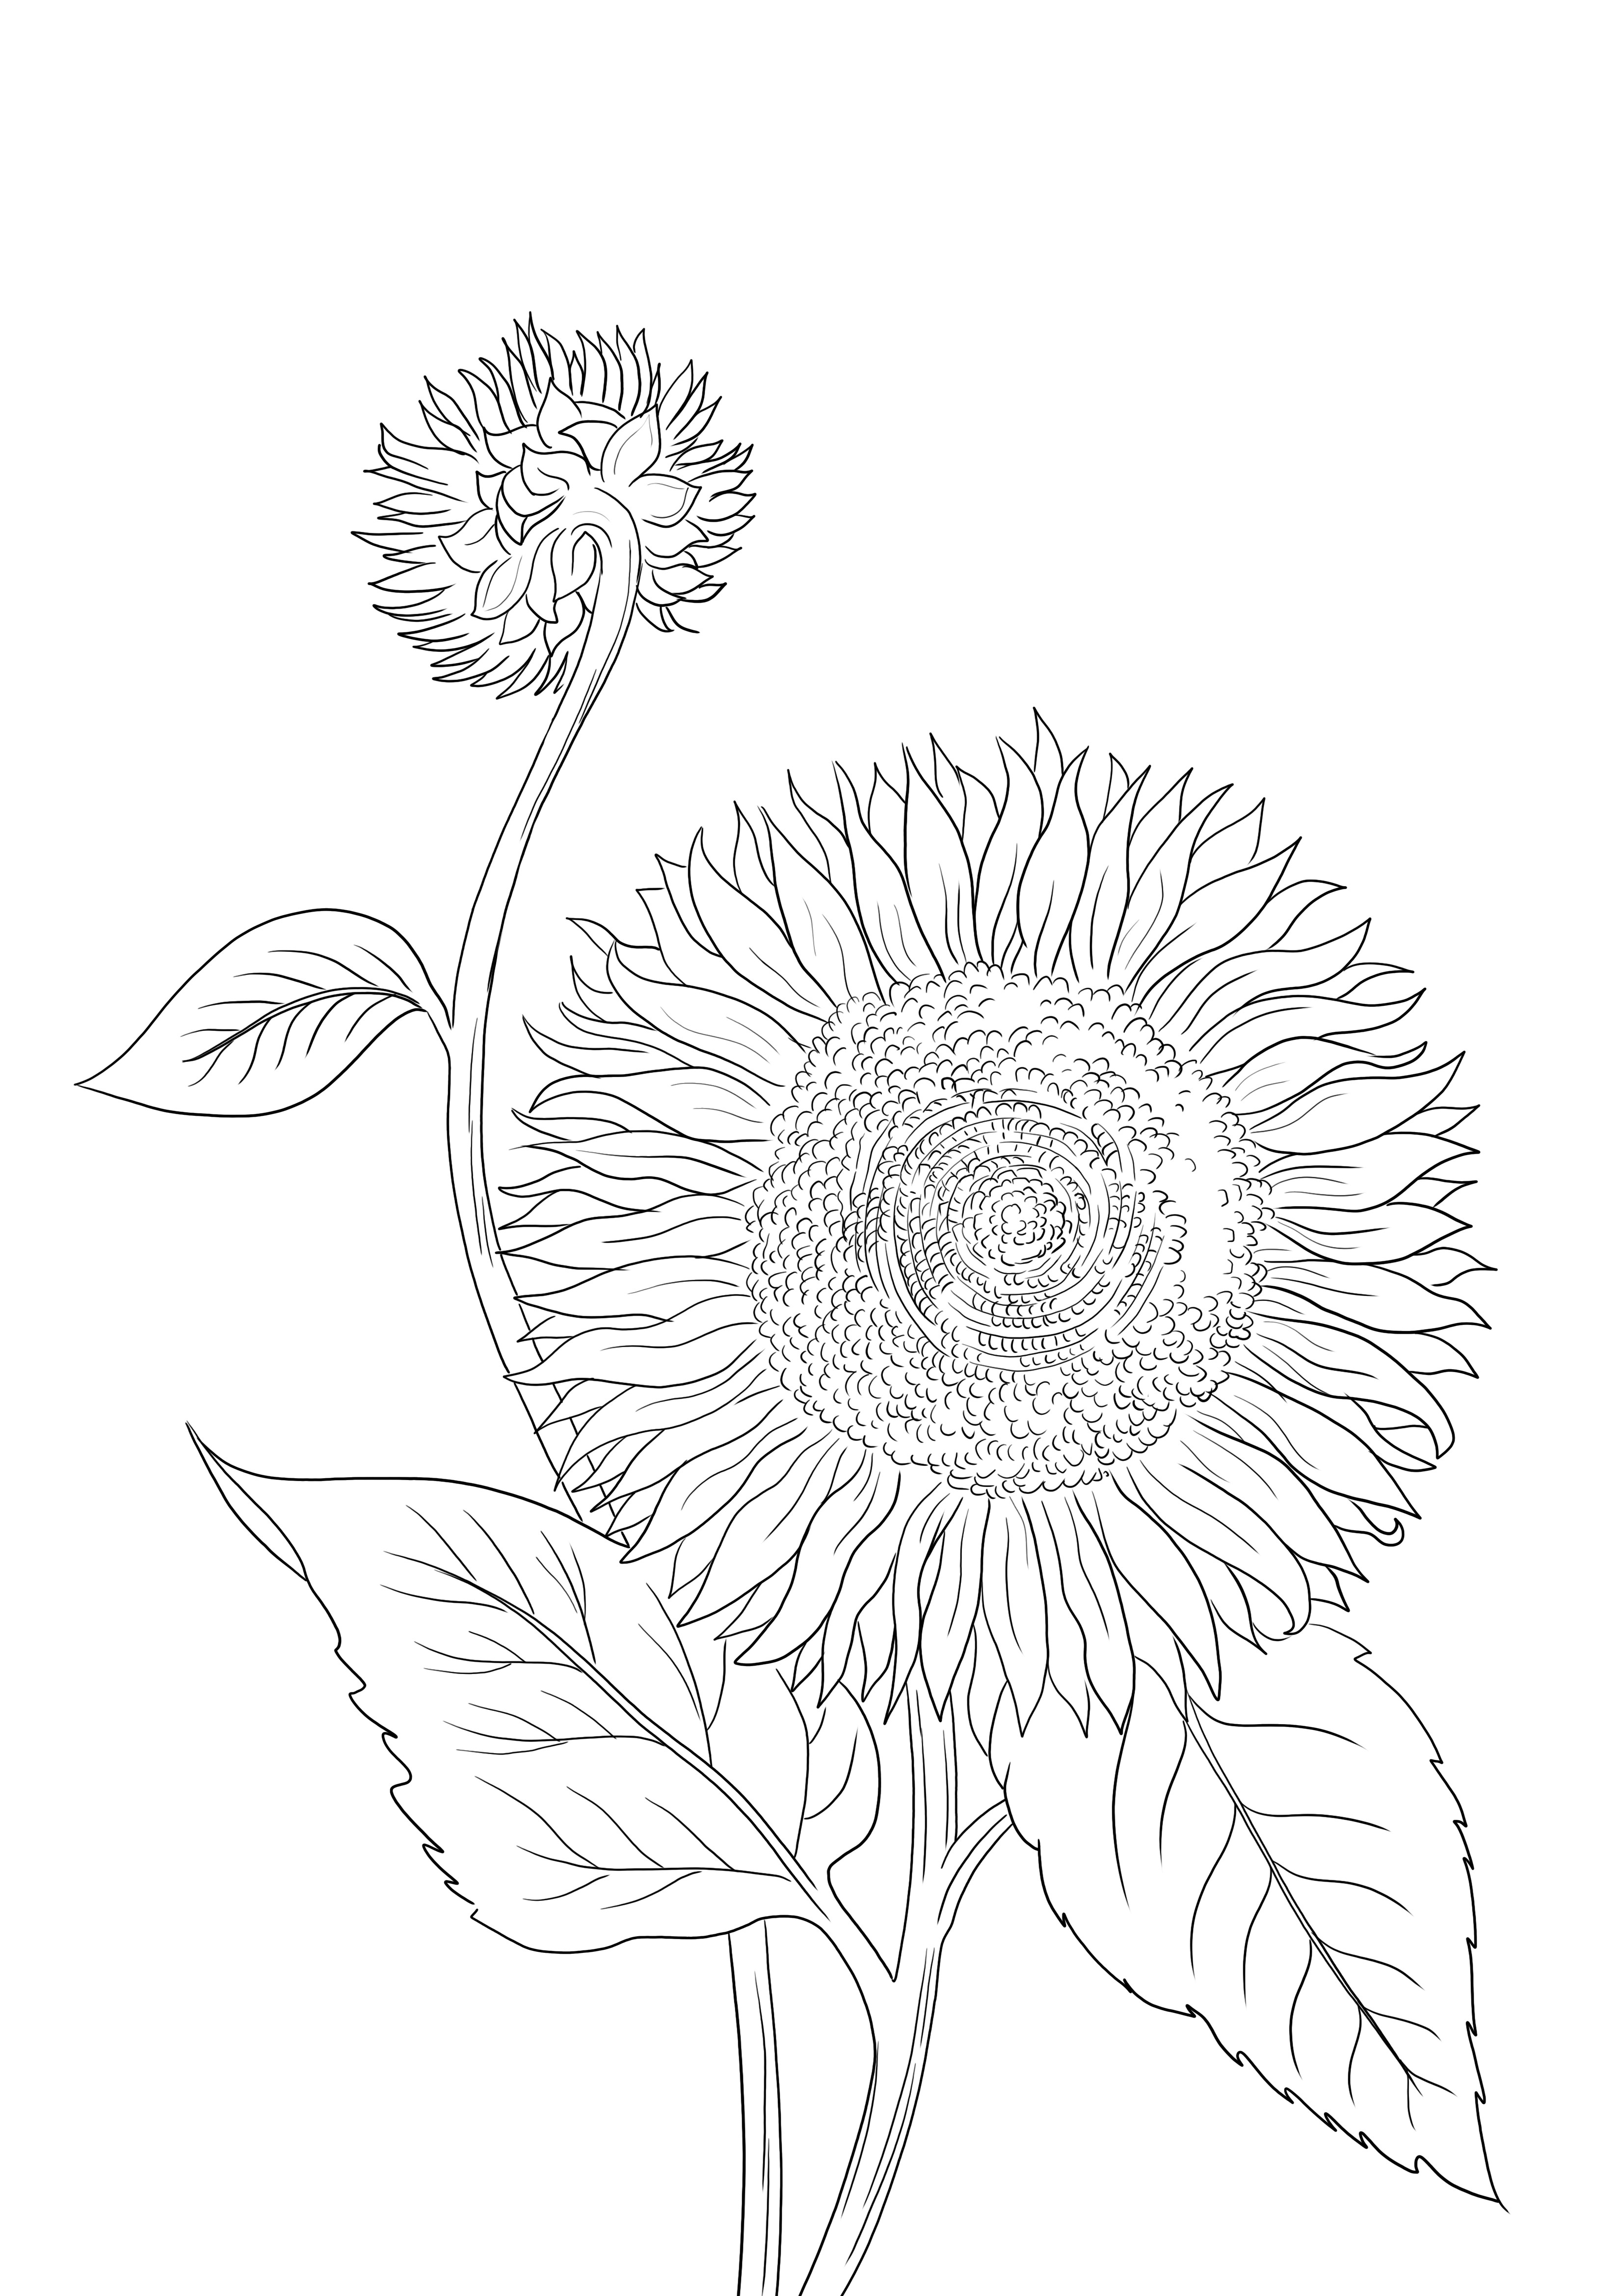 A Blooming Sunflower nyomtatásra, letöltésre és színezésre készen áll